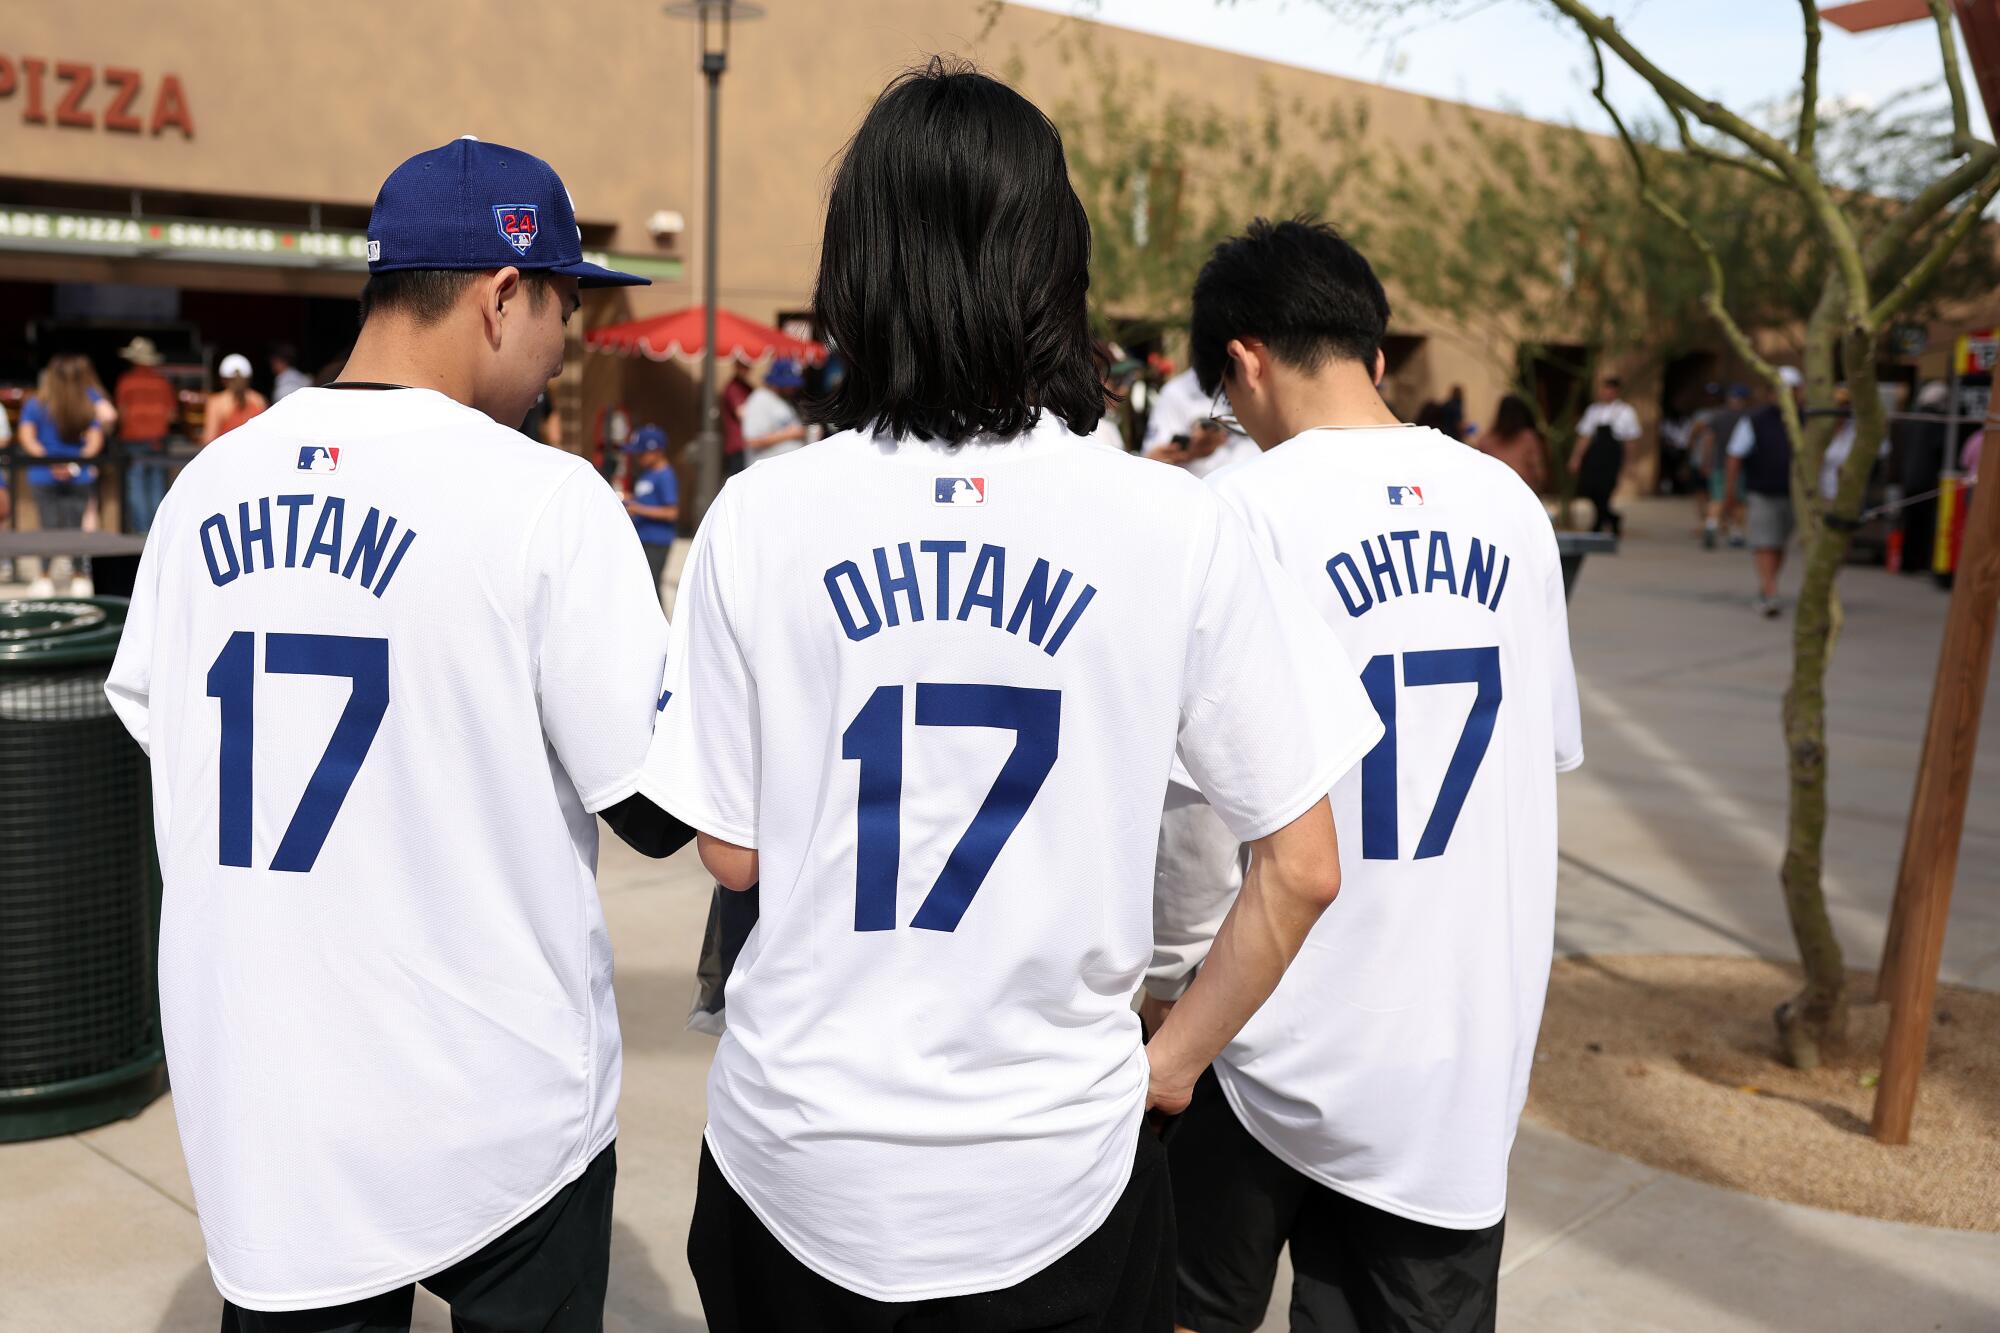 身穿 Shohei Ohtani 球衣的球迷来到驼背牧场观看道奇队和芝加哥白袜队的比赛。